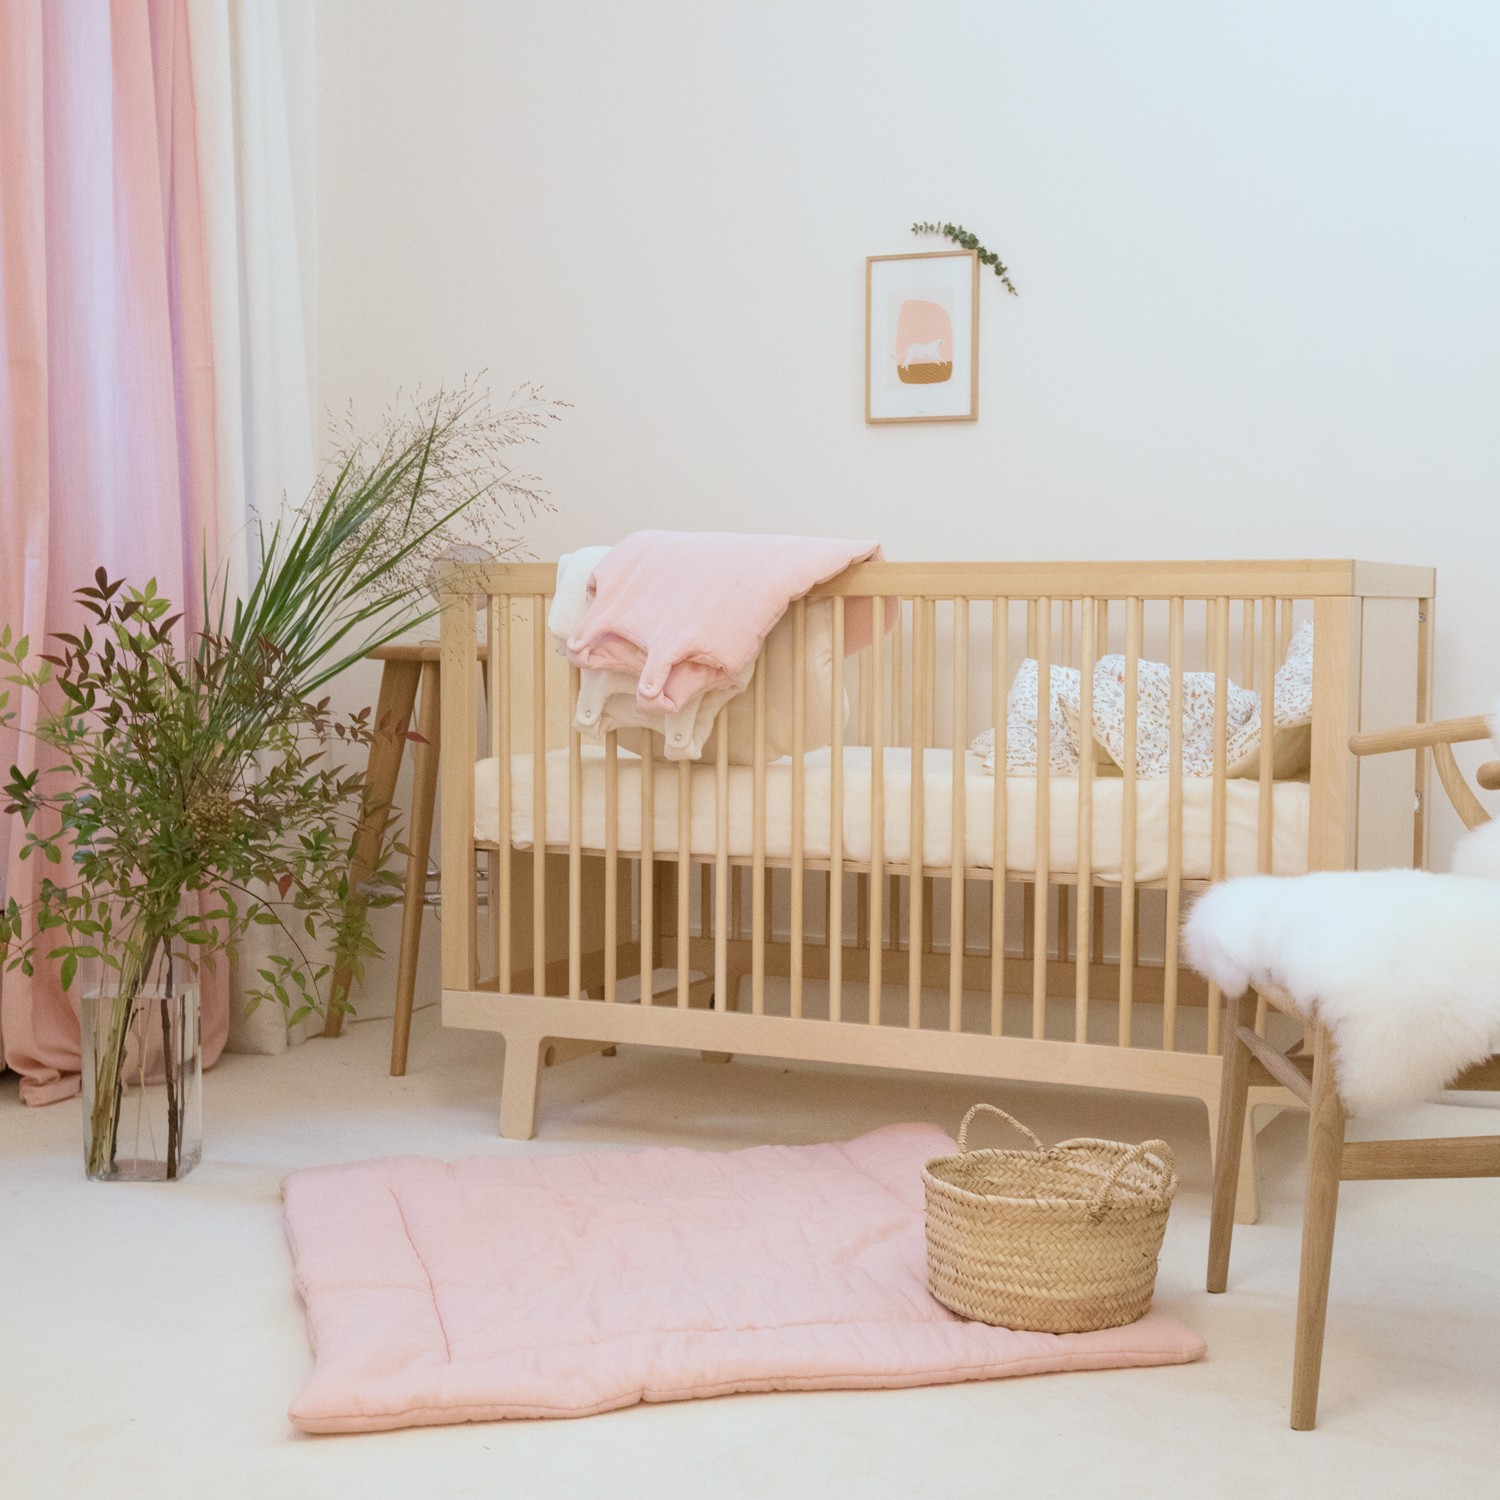 Tapis de jeu bébé fille grand format en gaze de coton bio rose poudre